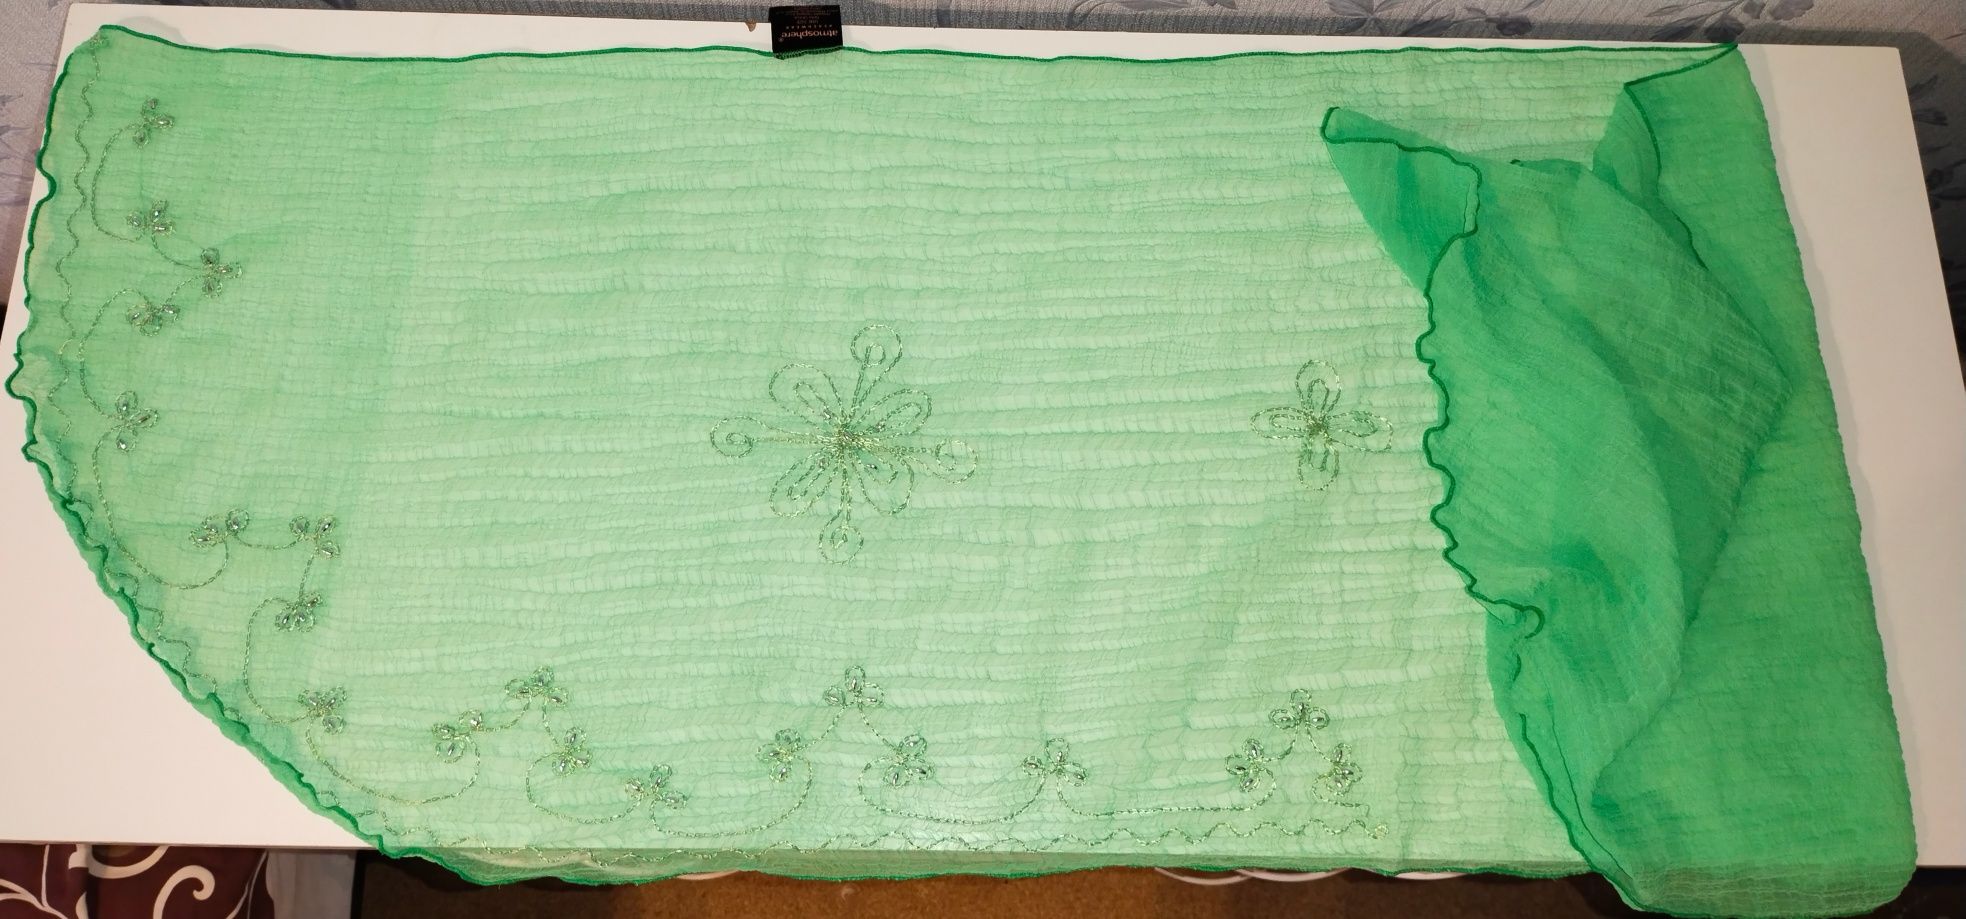 Парэо, ярко-зеленого цвета из жатой ткани.